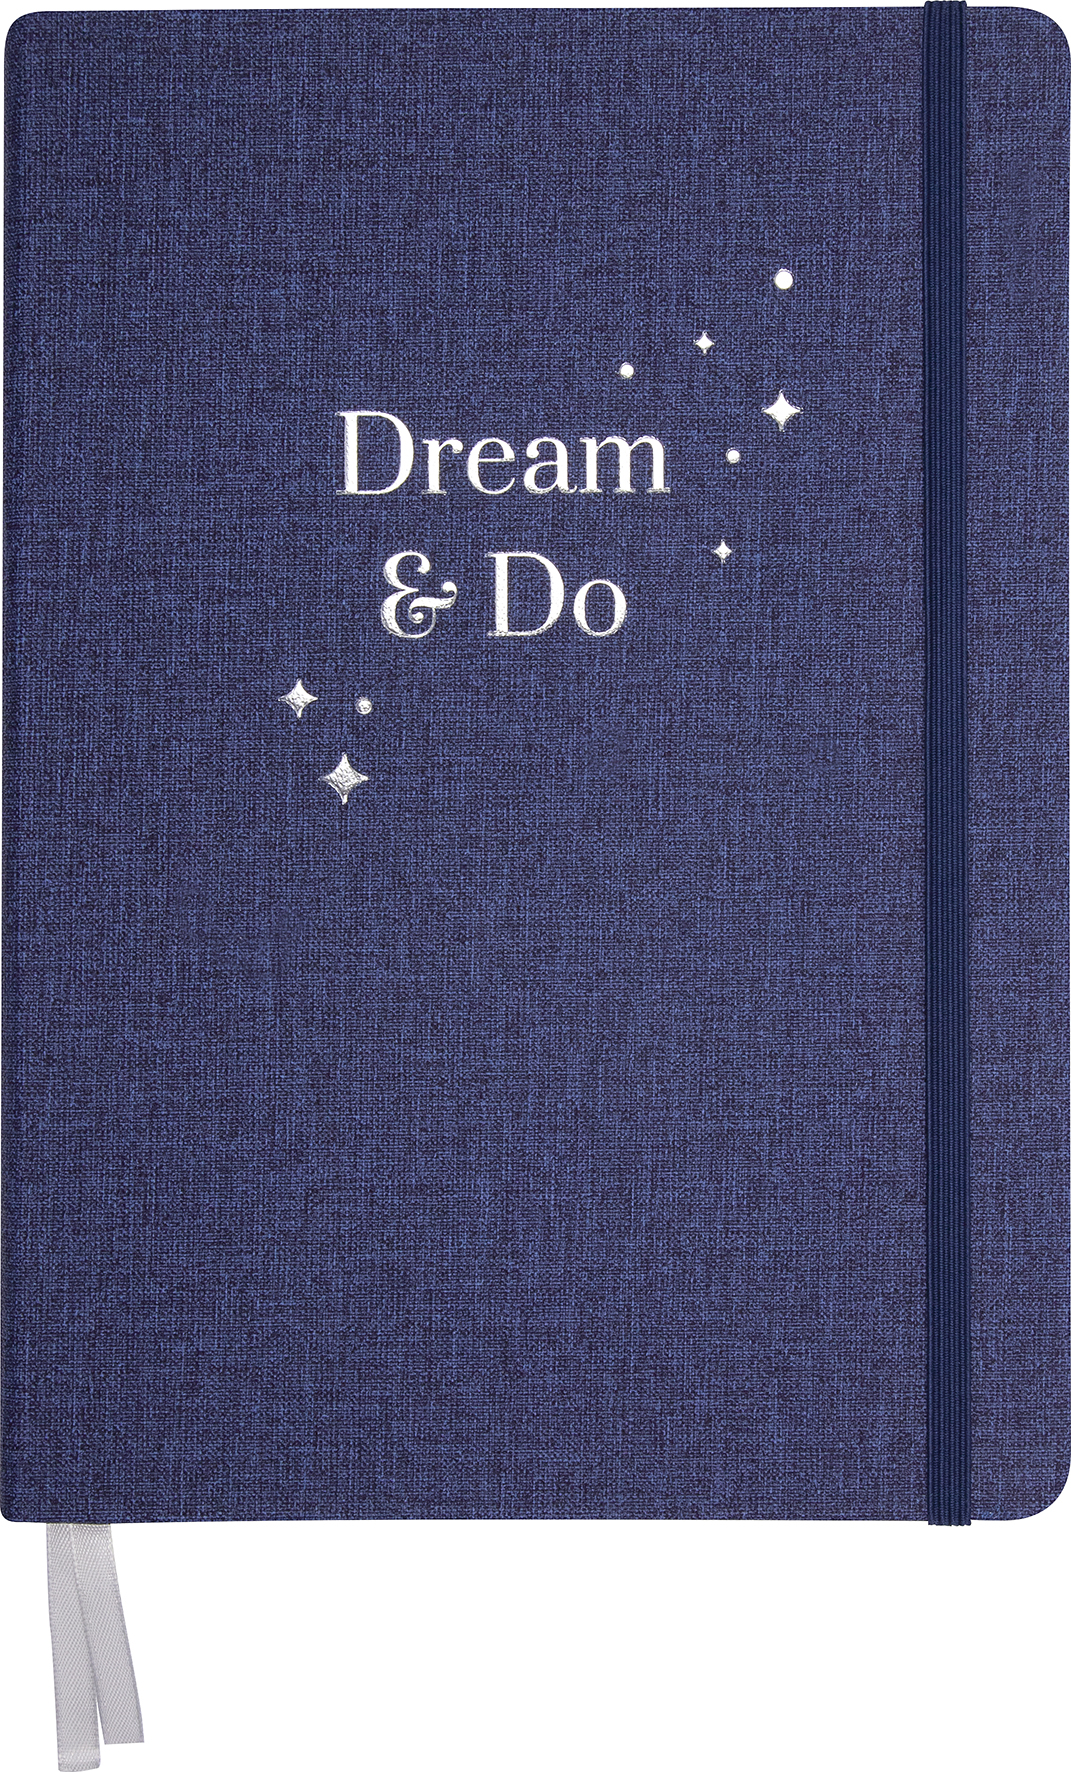 [6027423] Dream and do